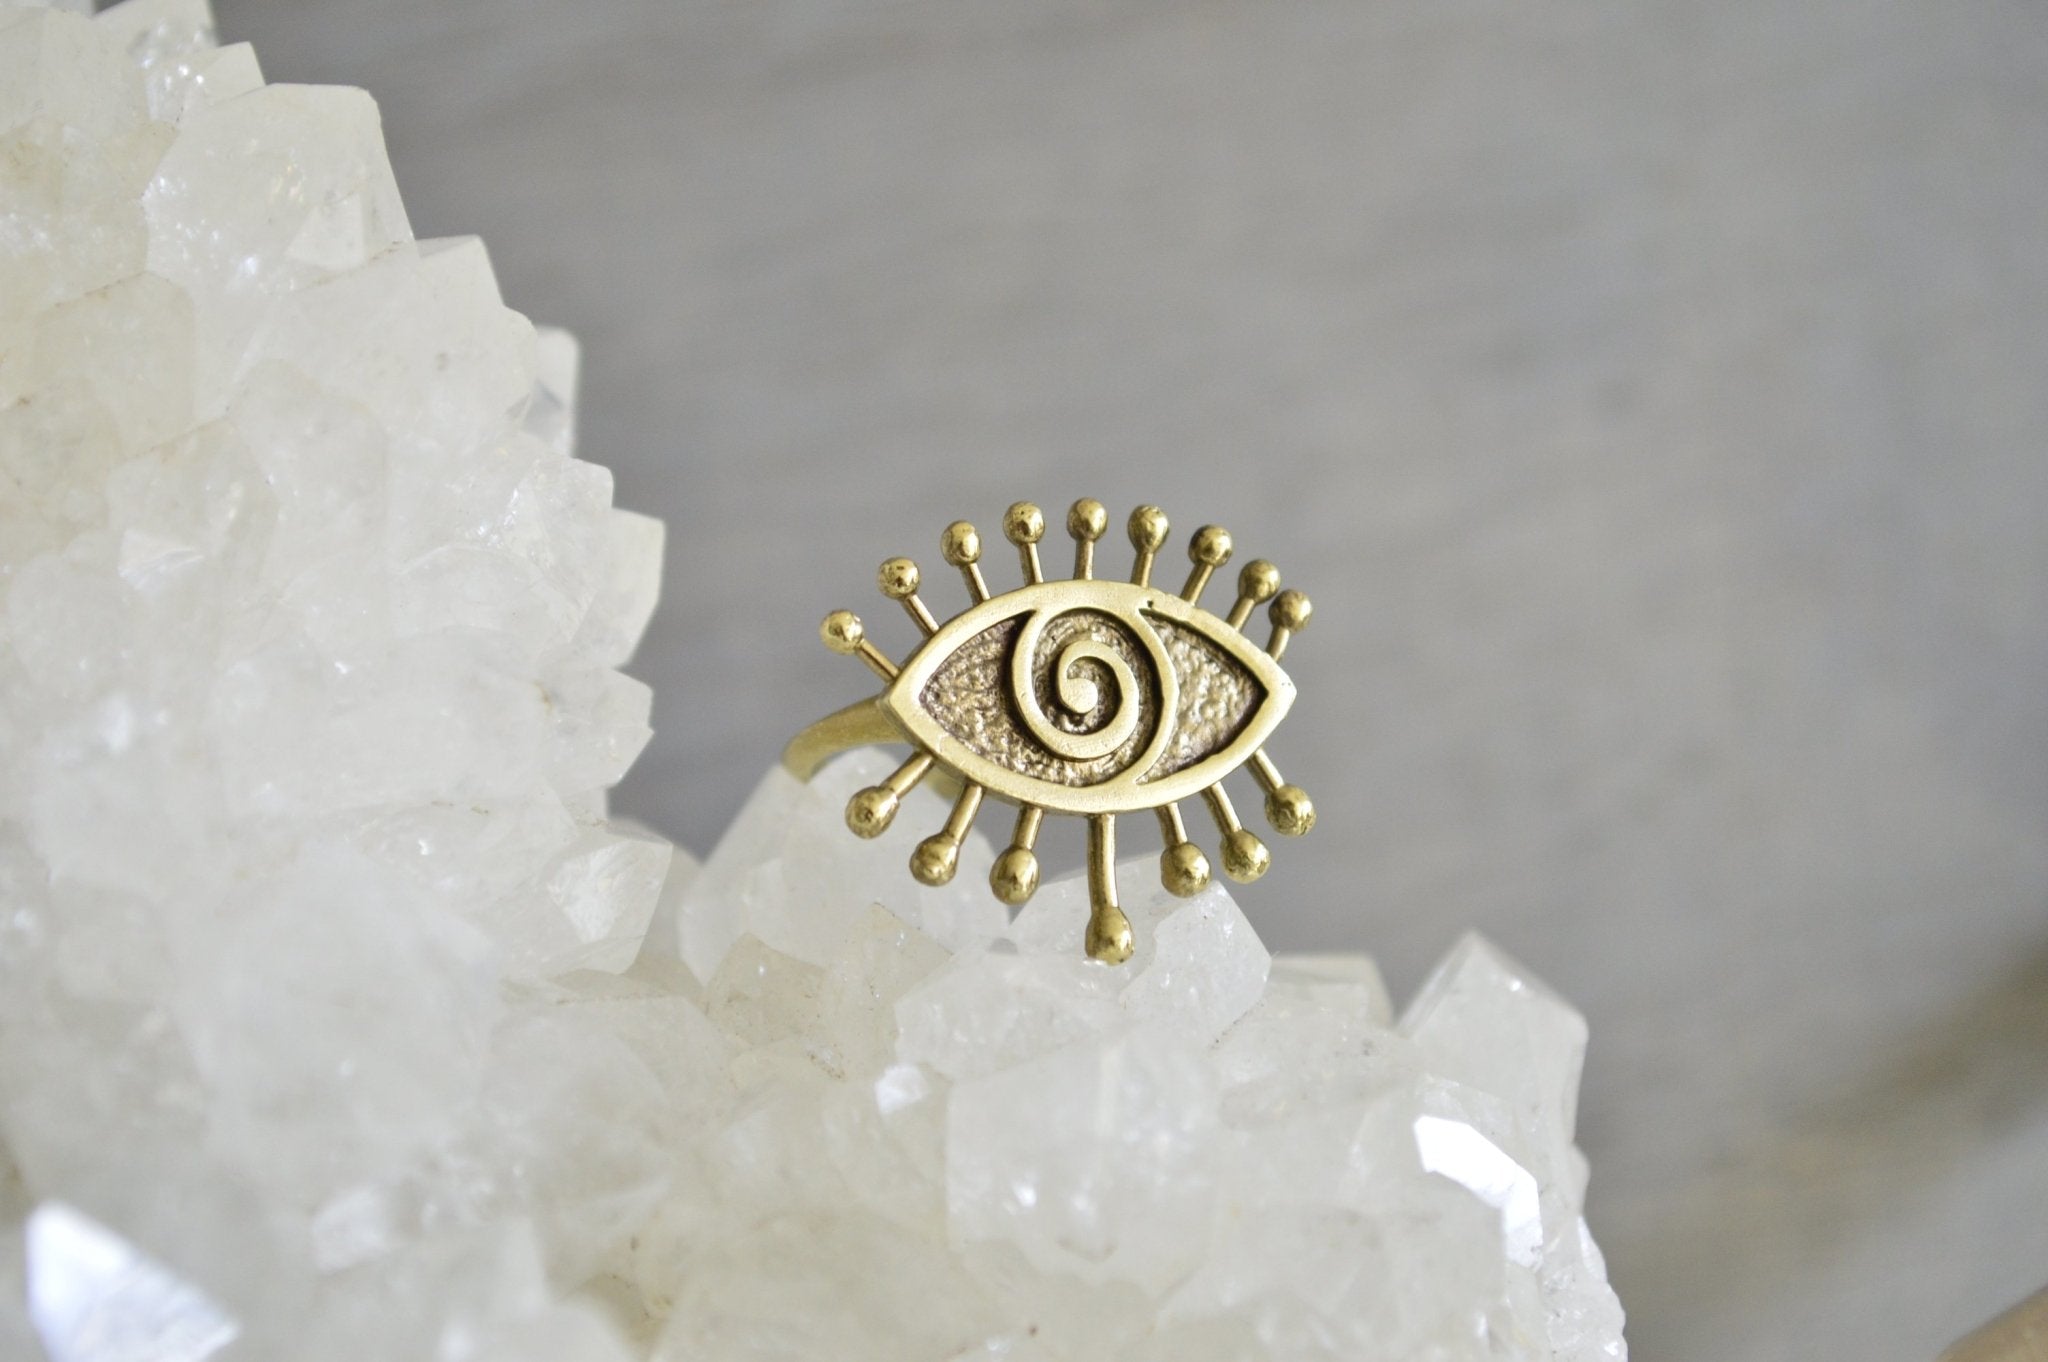 Hypnotize Brass Eye Ring - We Love Brass